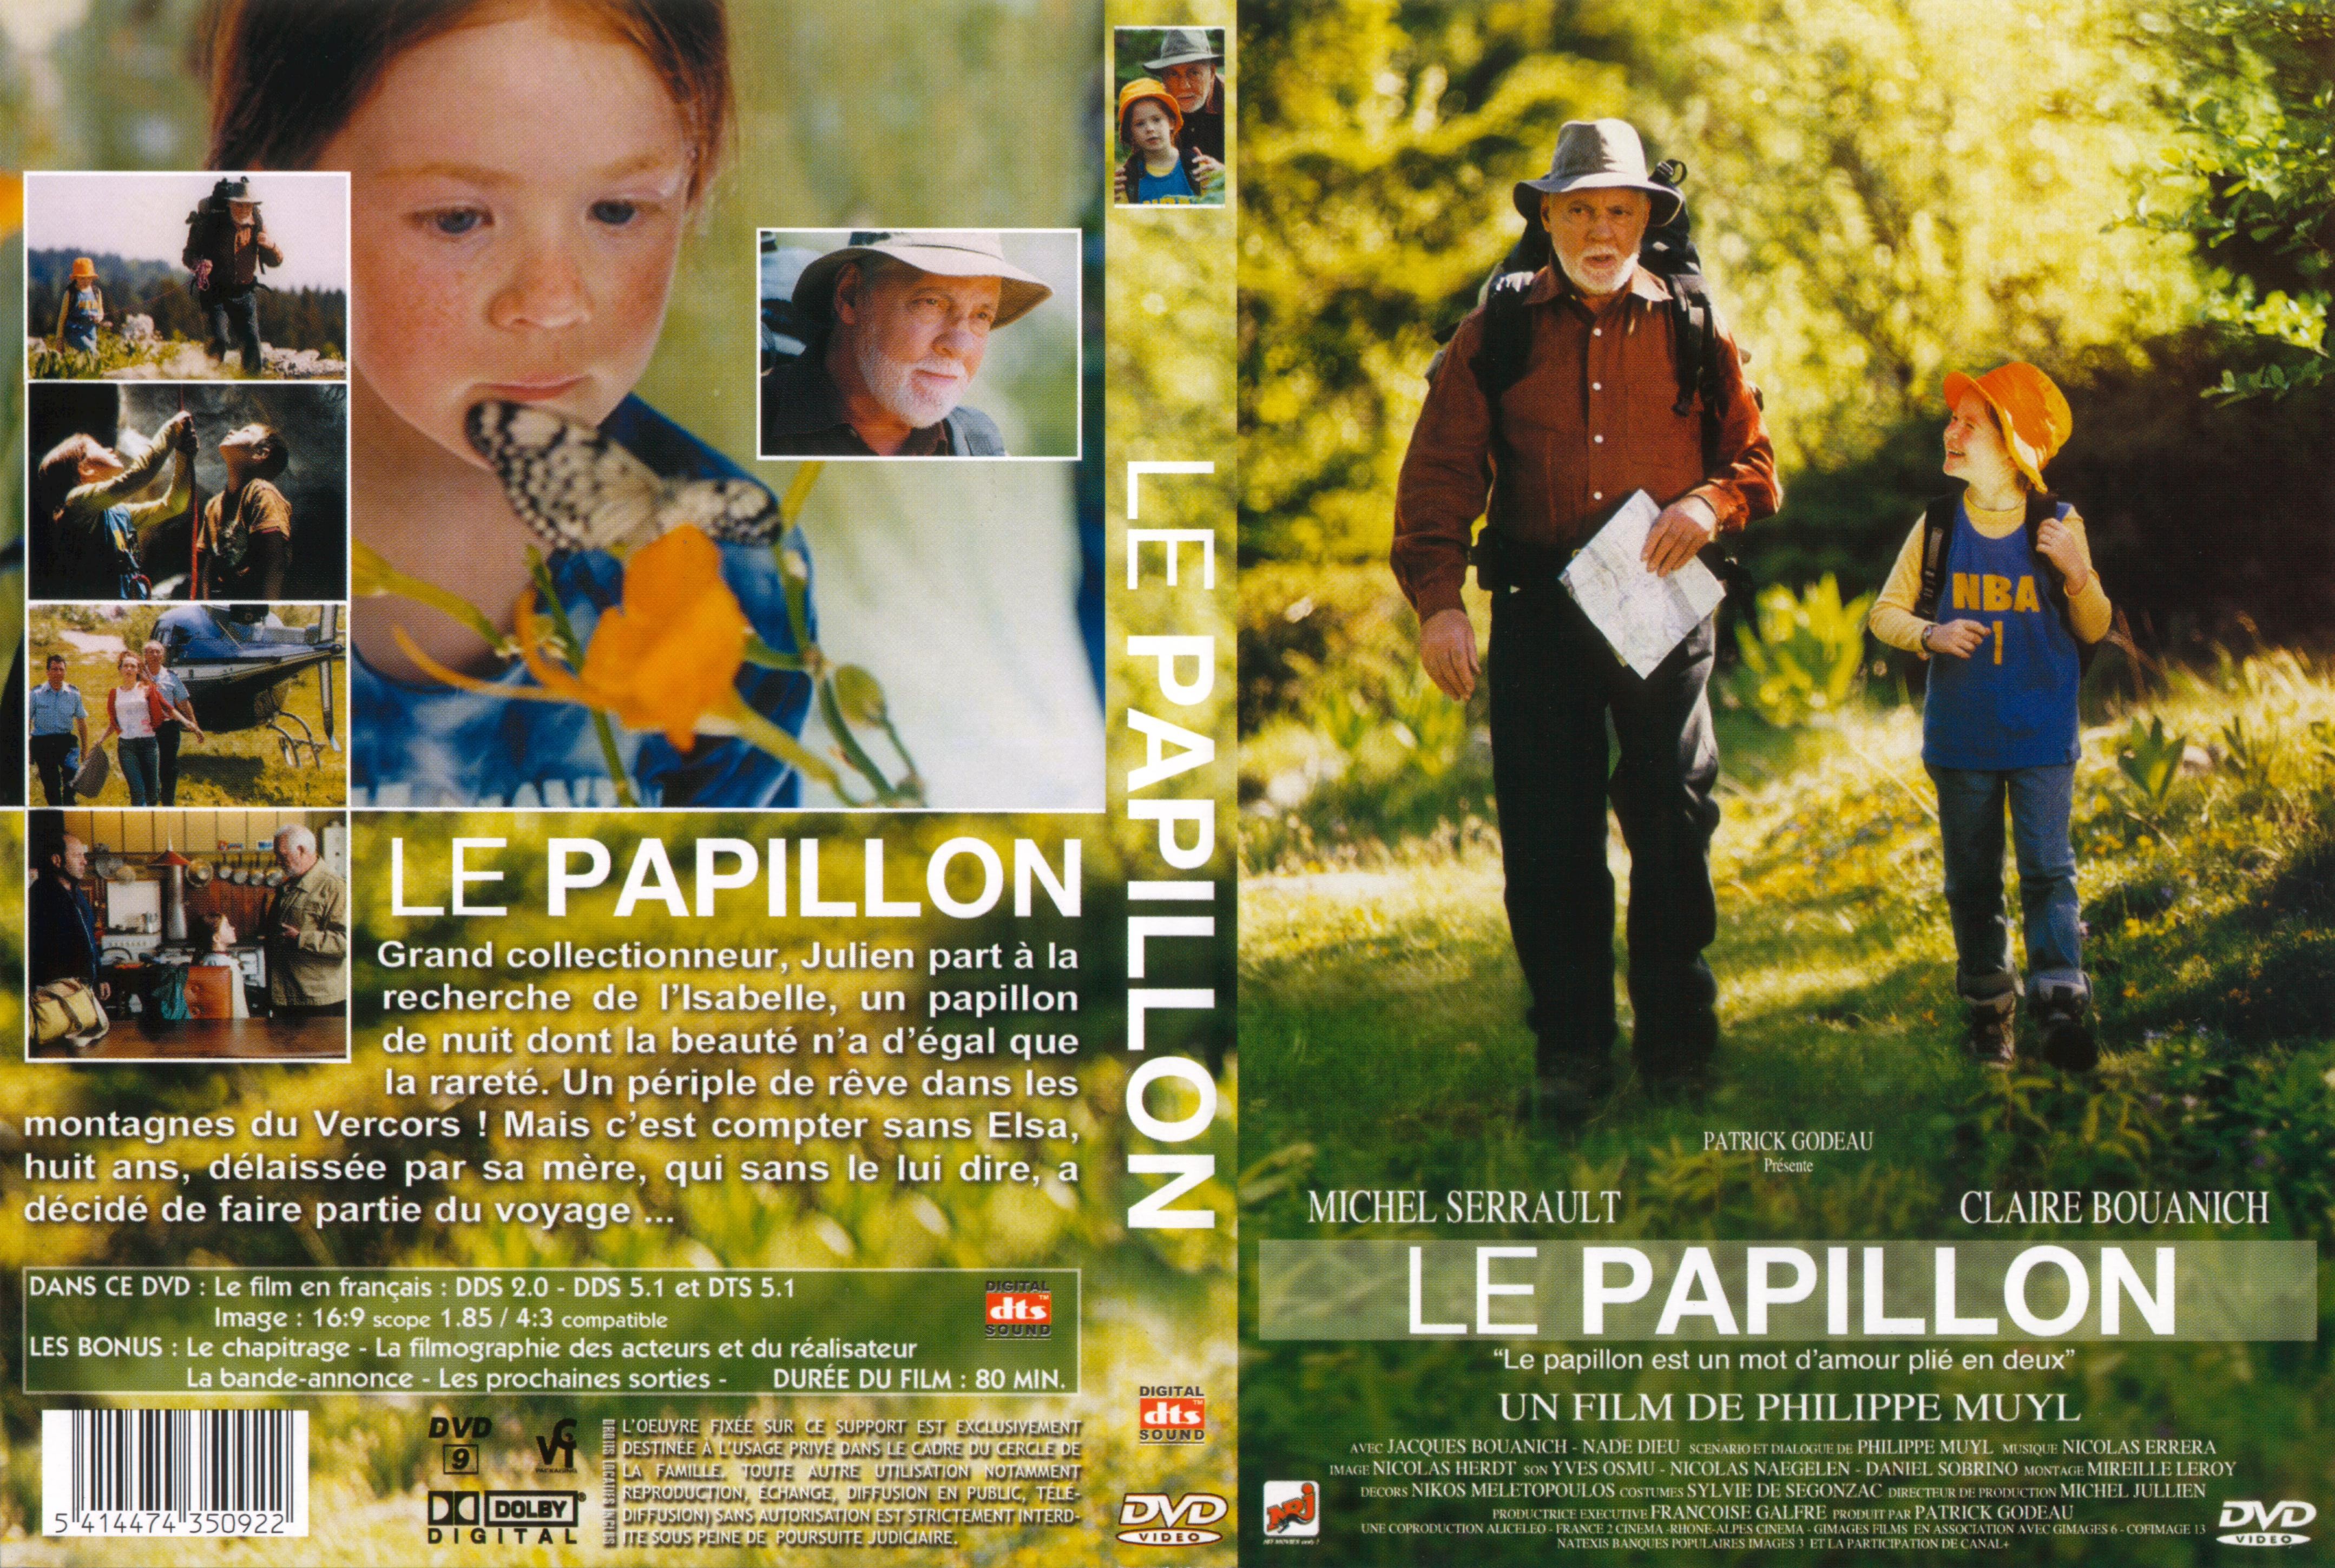 Jaquette DVD Le papillon v2